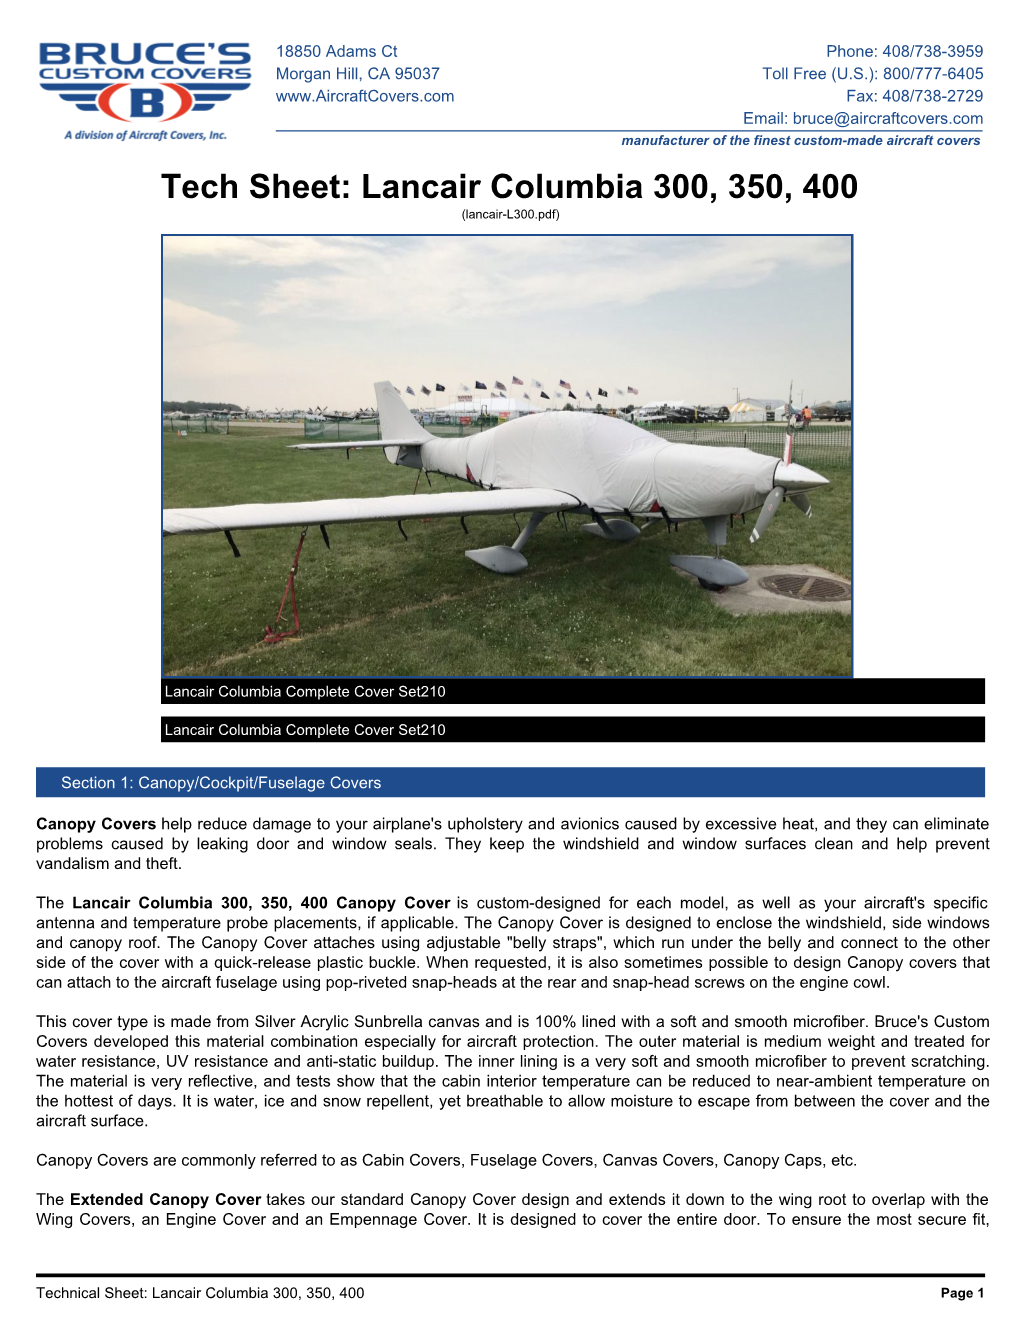 Lancair Columbia 300, 350, 400 (Lancair-L300.Pdf)